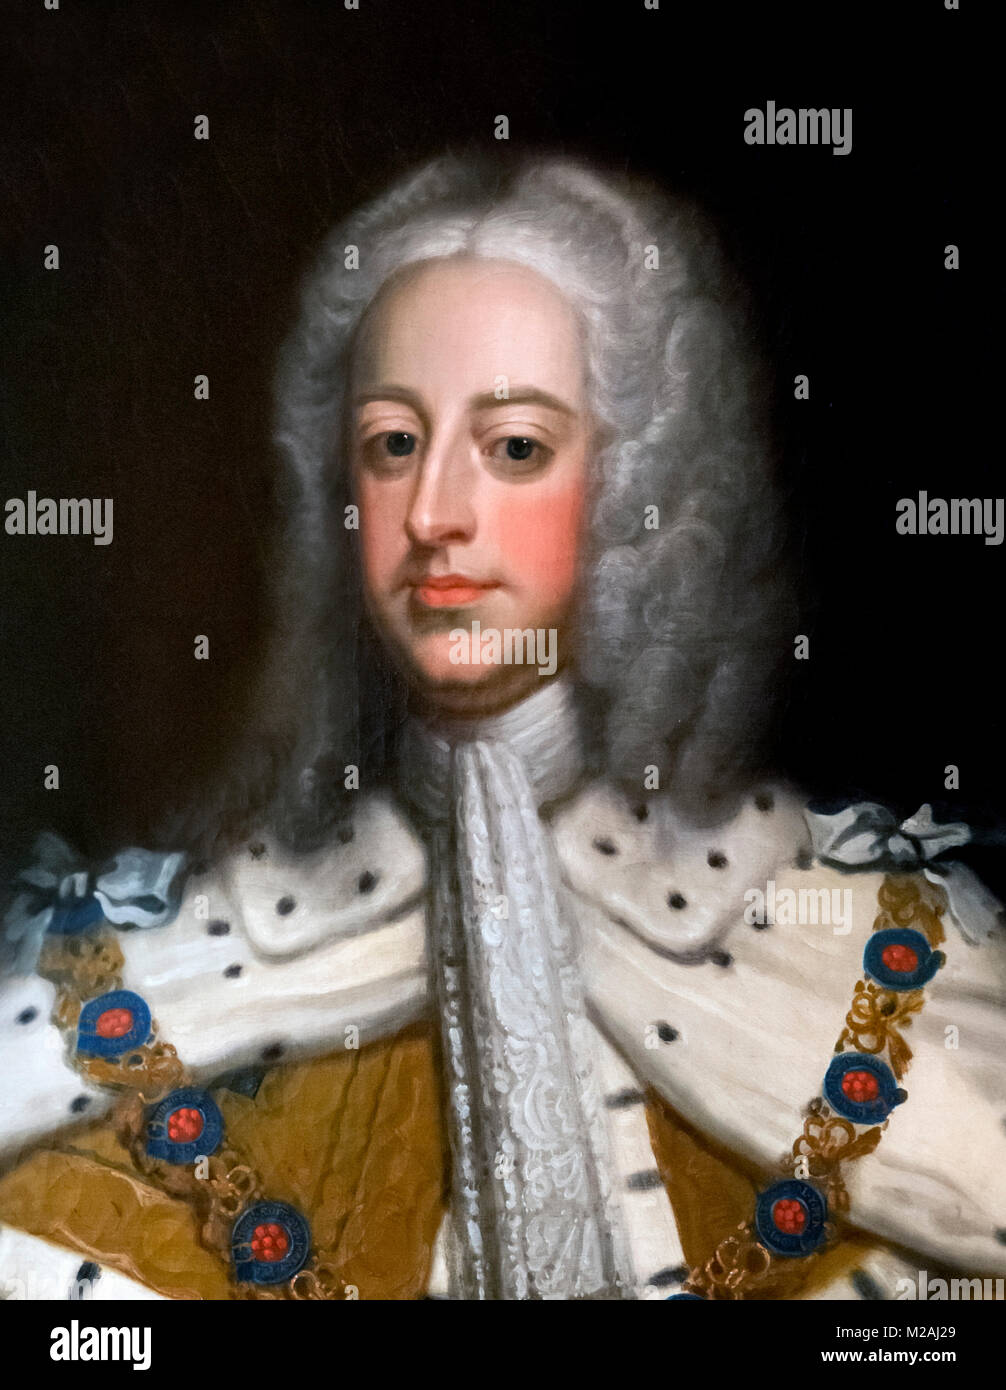 George II. Retrato del Rey Jorge II de Gran Bretaña por artista desconocido, óleo sobre lienzo, 1740-50 Foto de stock